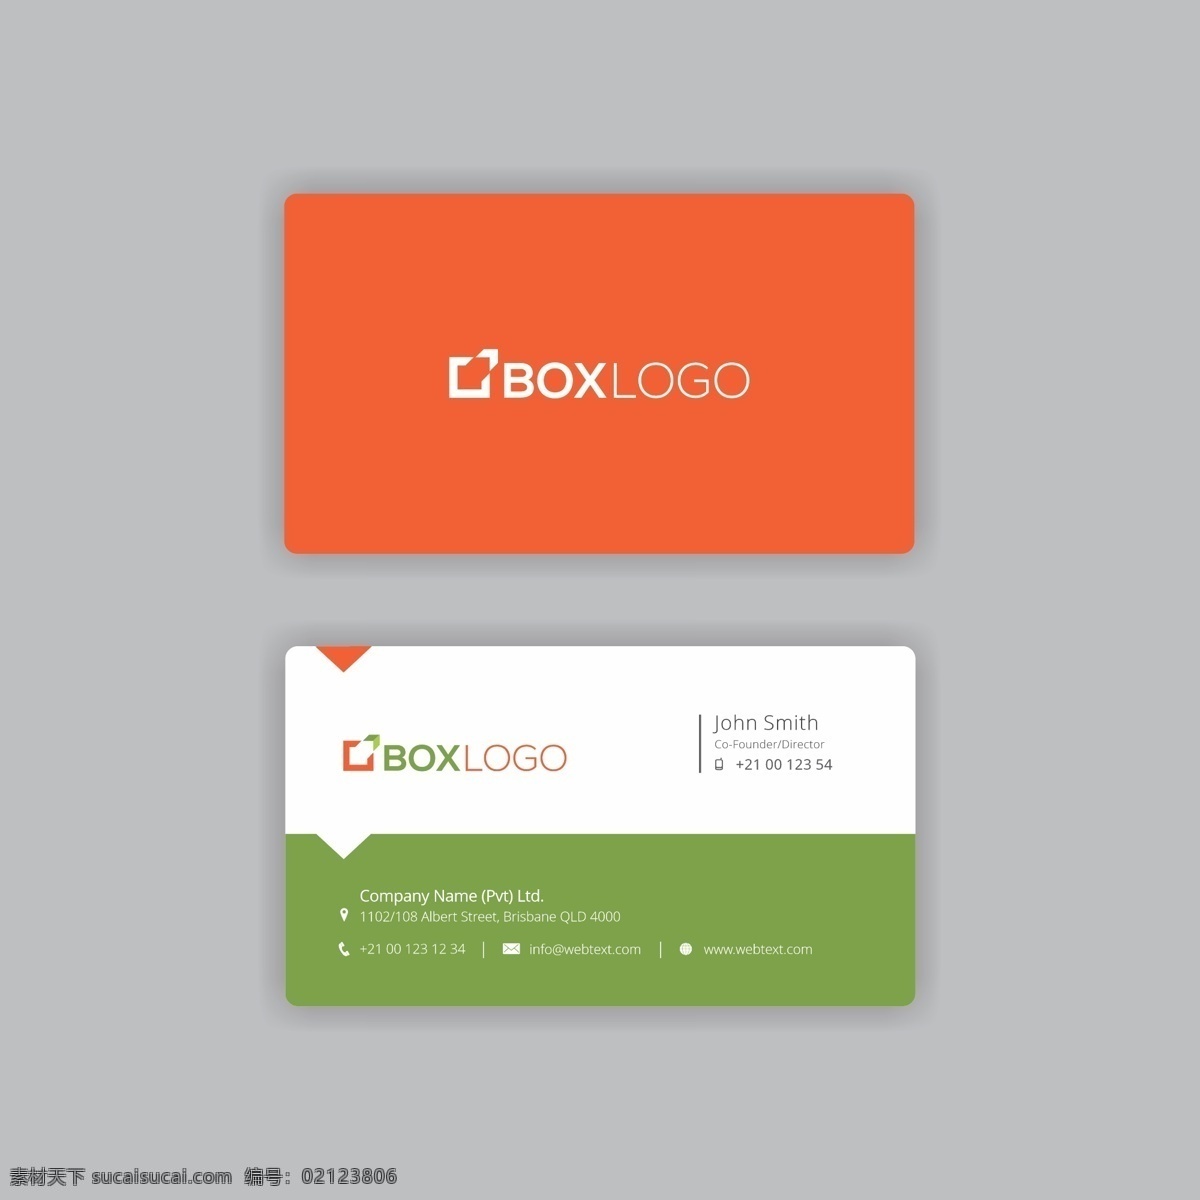 绿色 橙色 名片 标志 小册子 商务 传单 抽象 办公室 模板 叶 封面 介绍 信 公司 品牌 卡片 现代